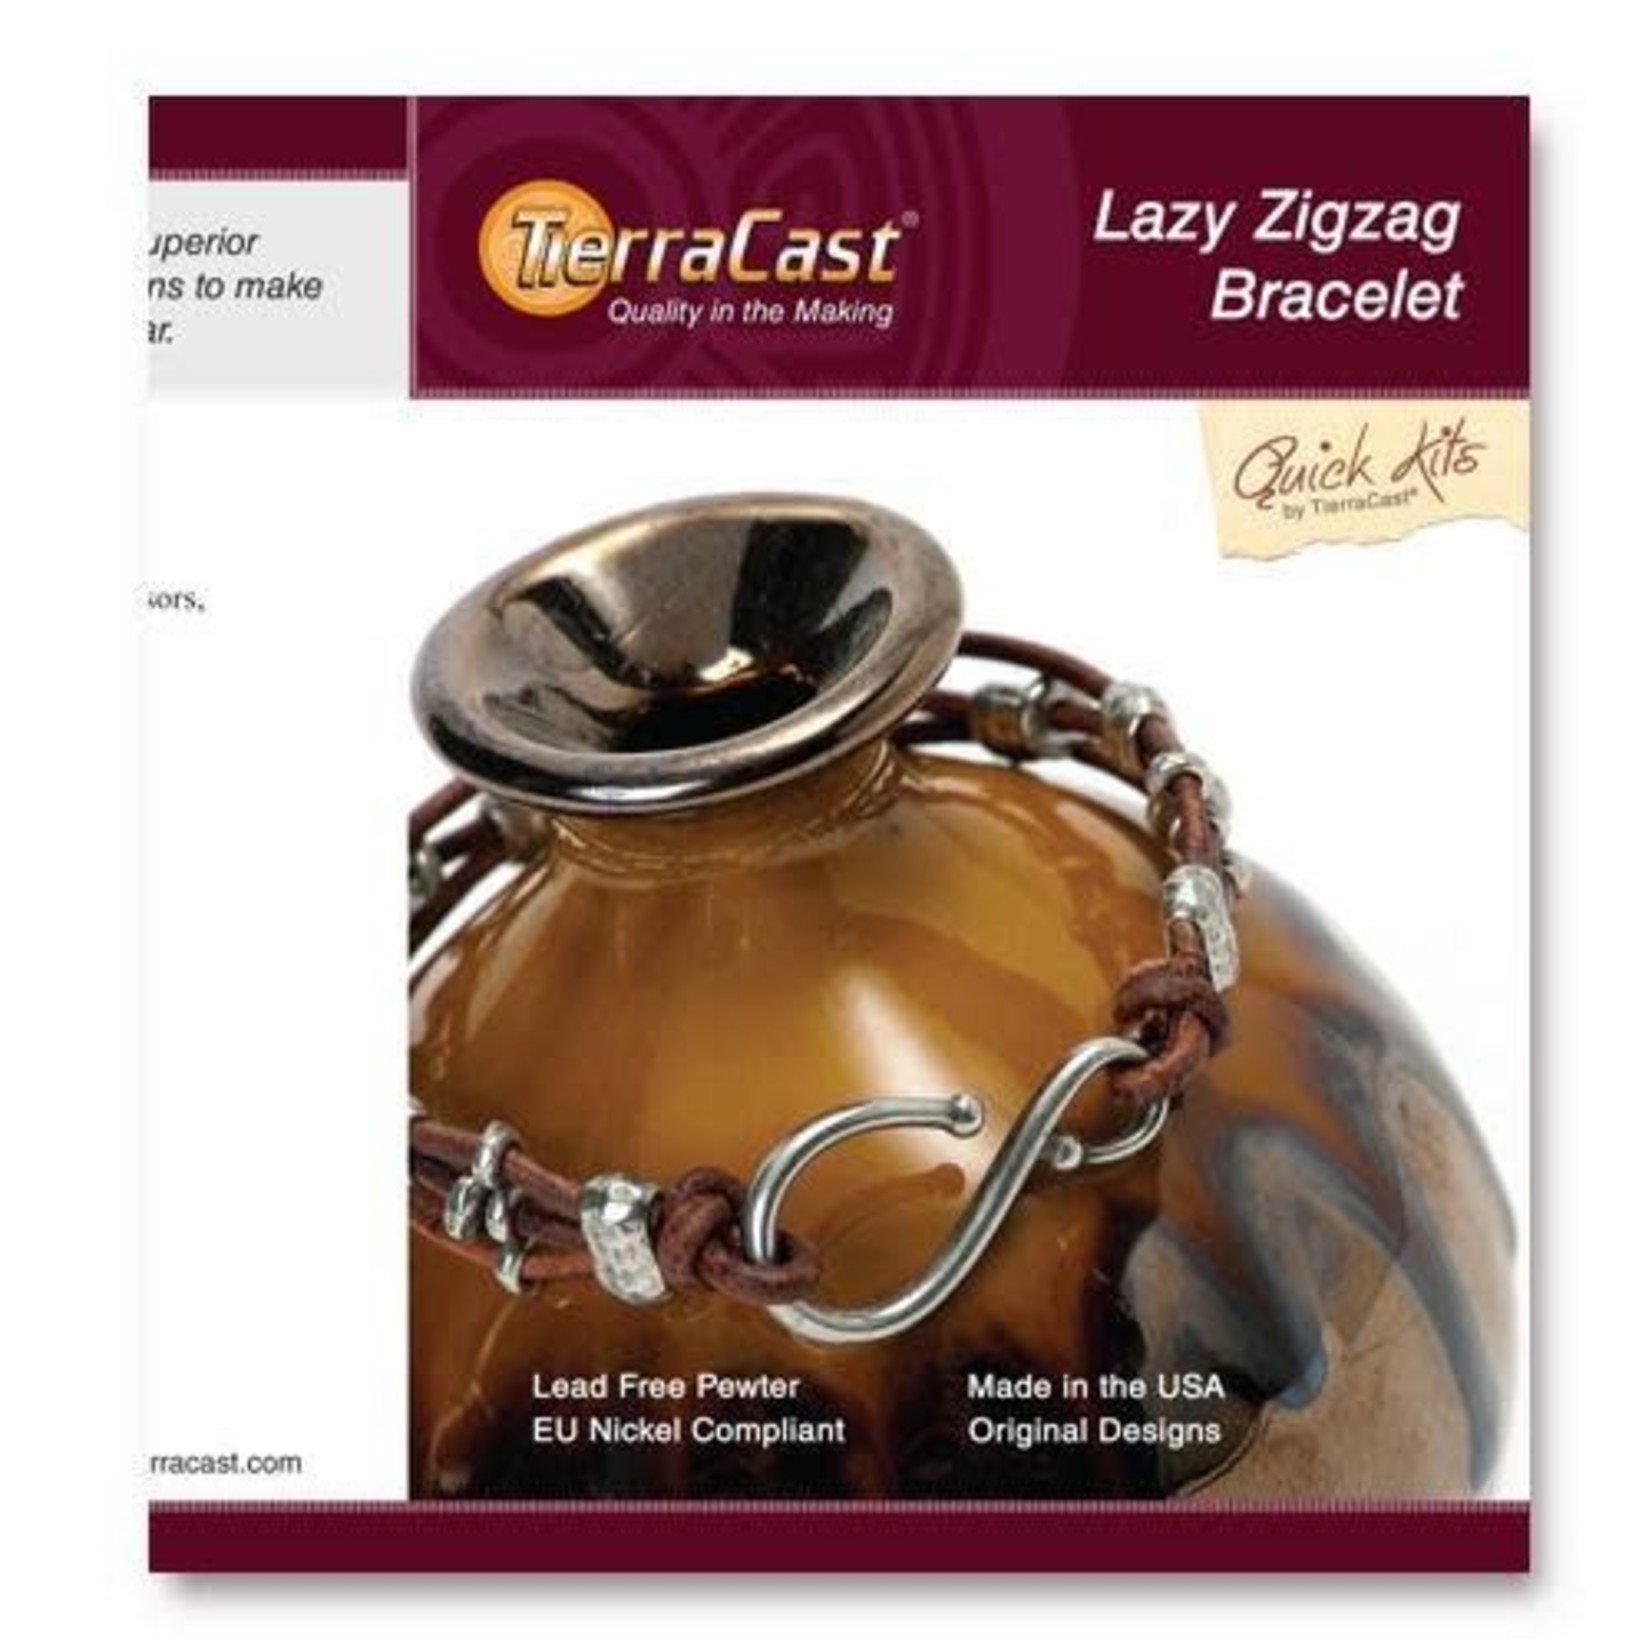 Lazy Zigzag Bracelet Kit